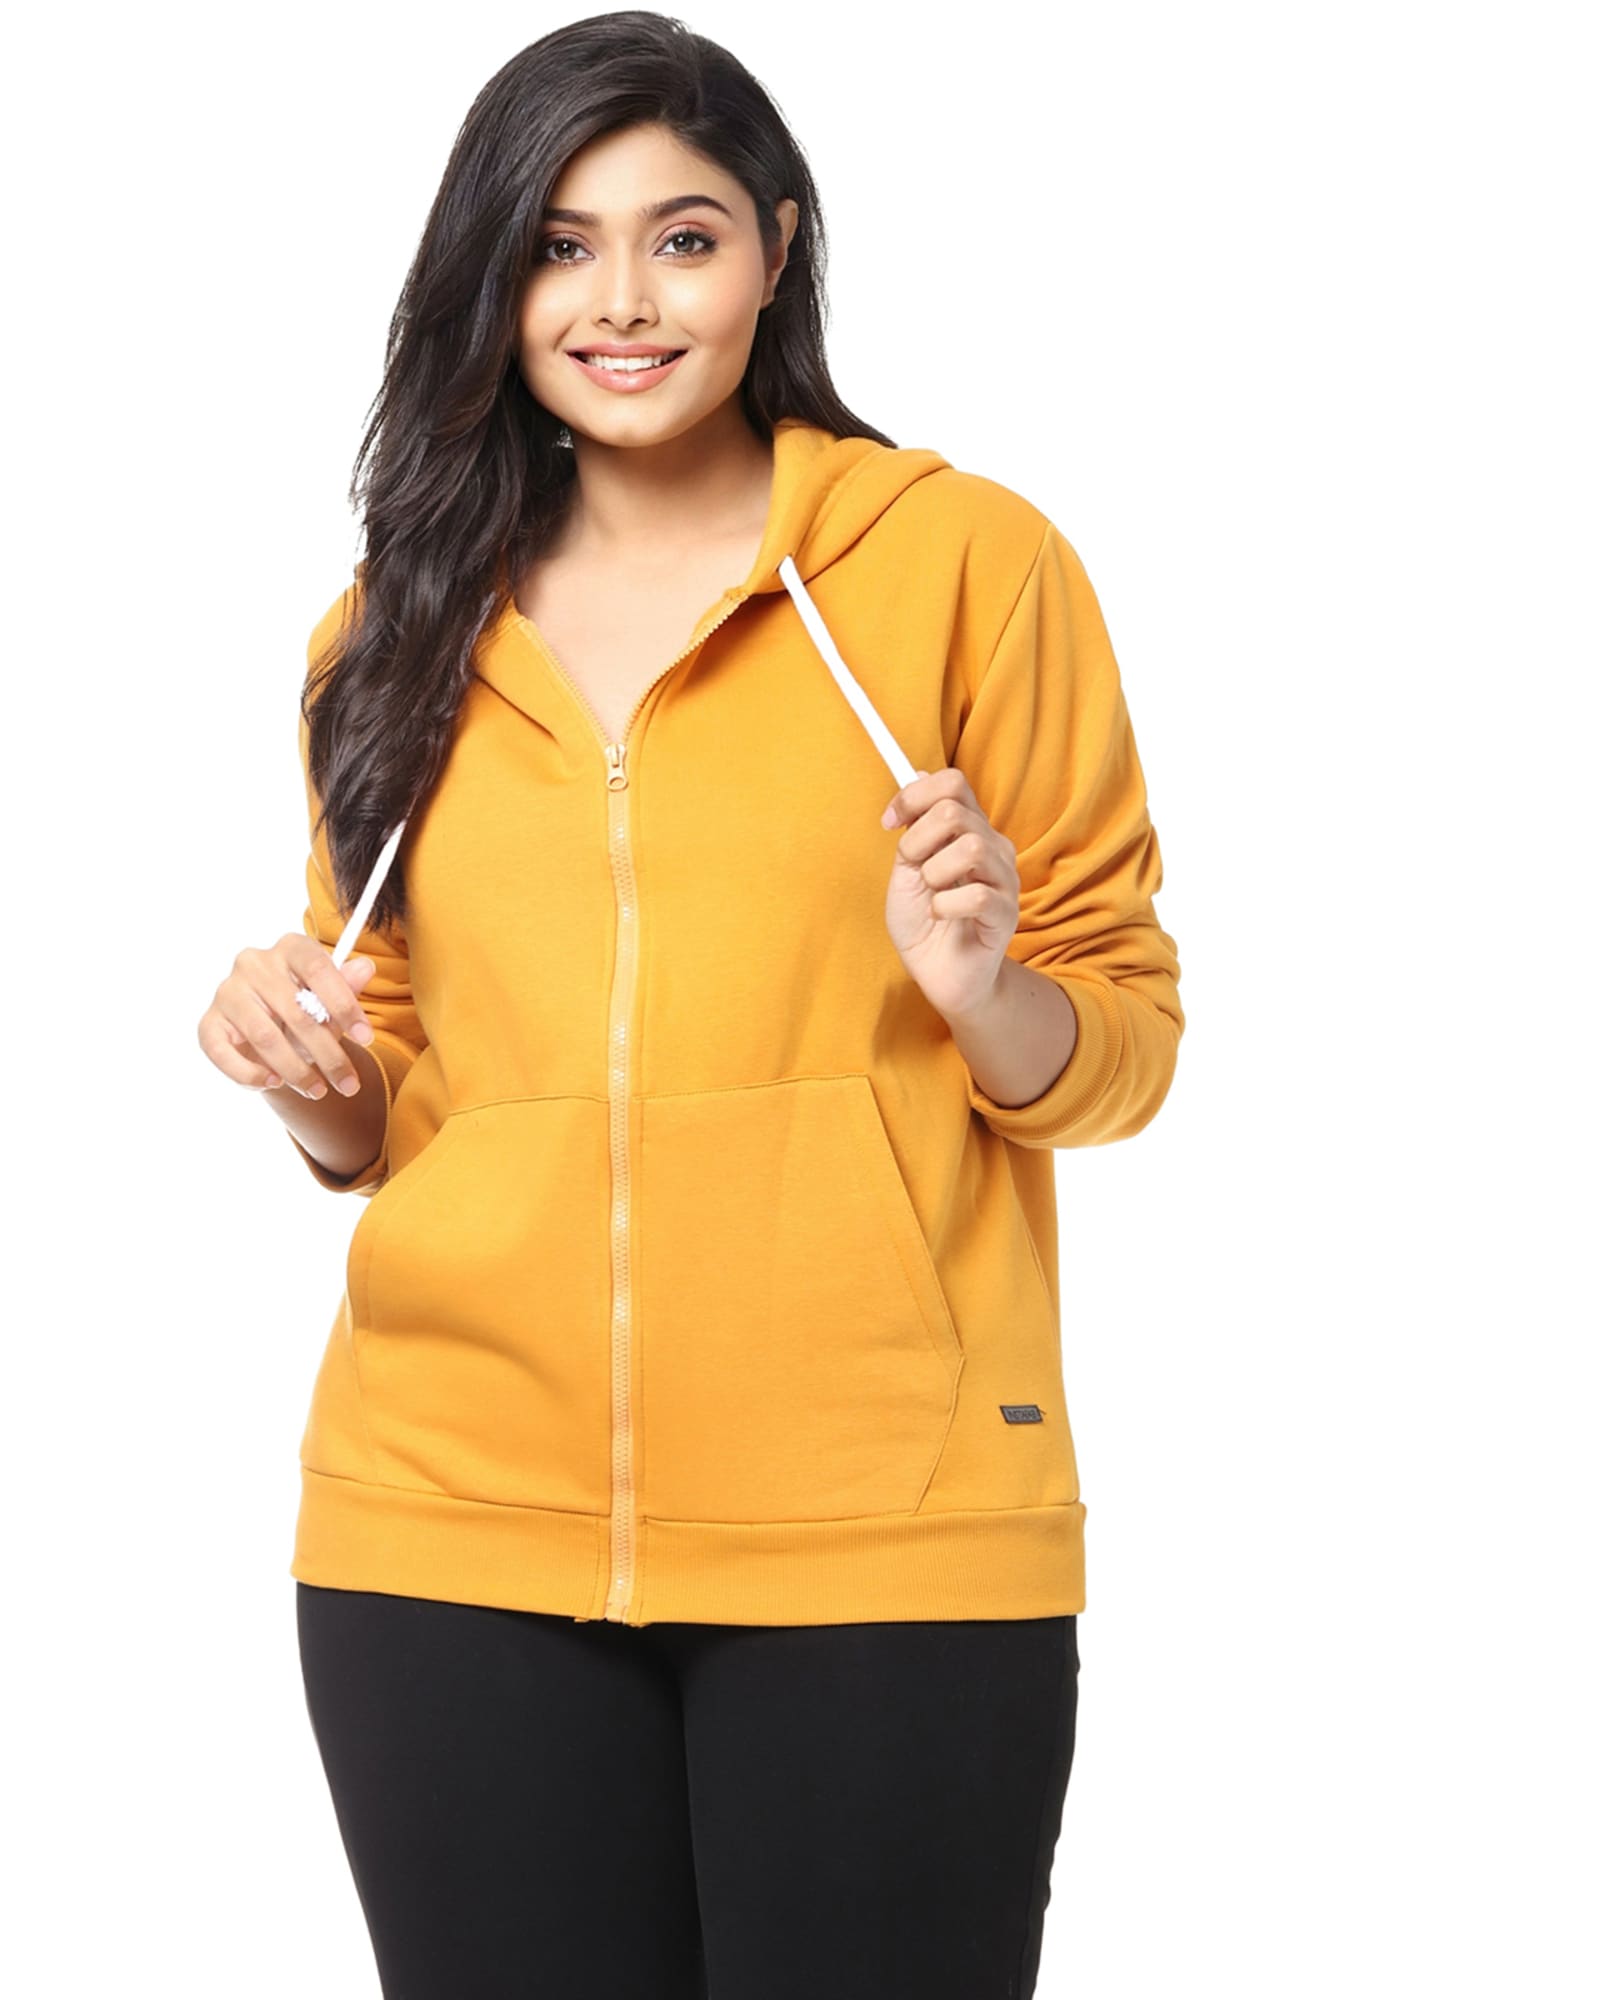 Solid Hooded Sweatshirt- With Zipper | Yellow